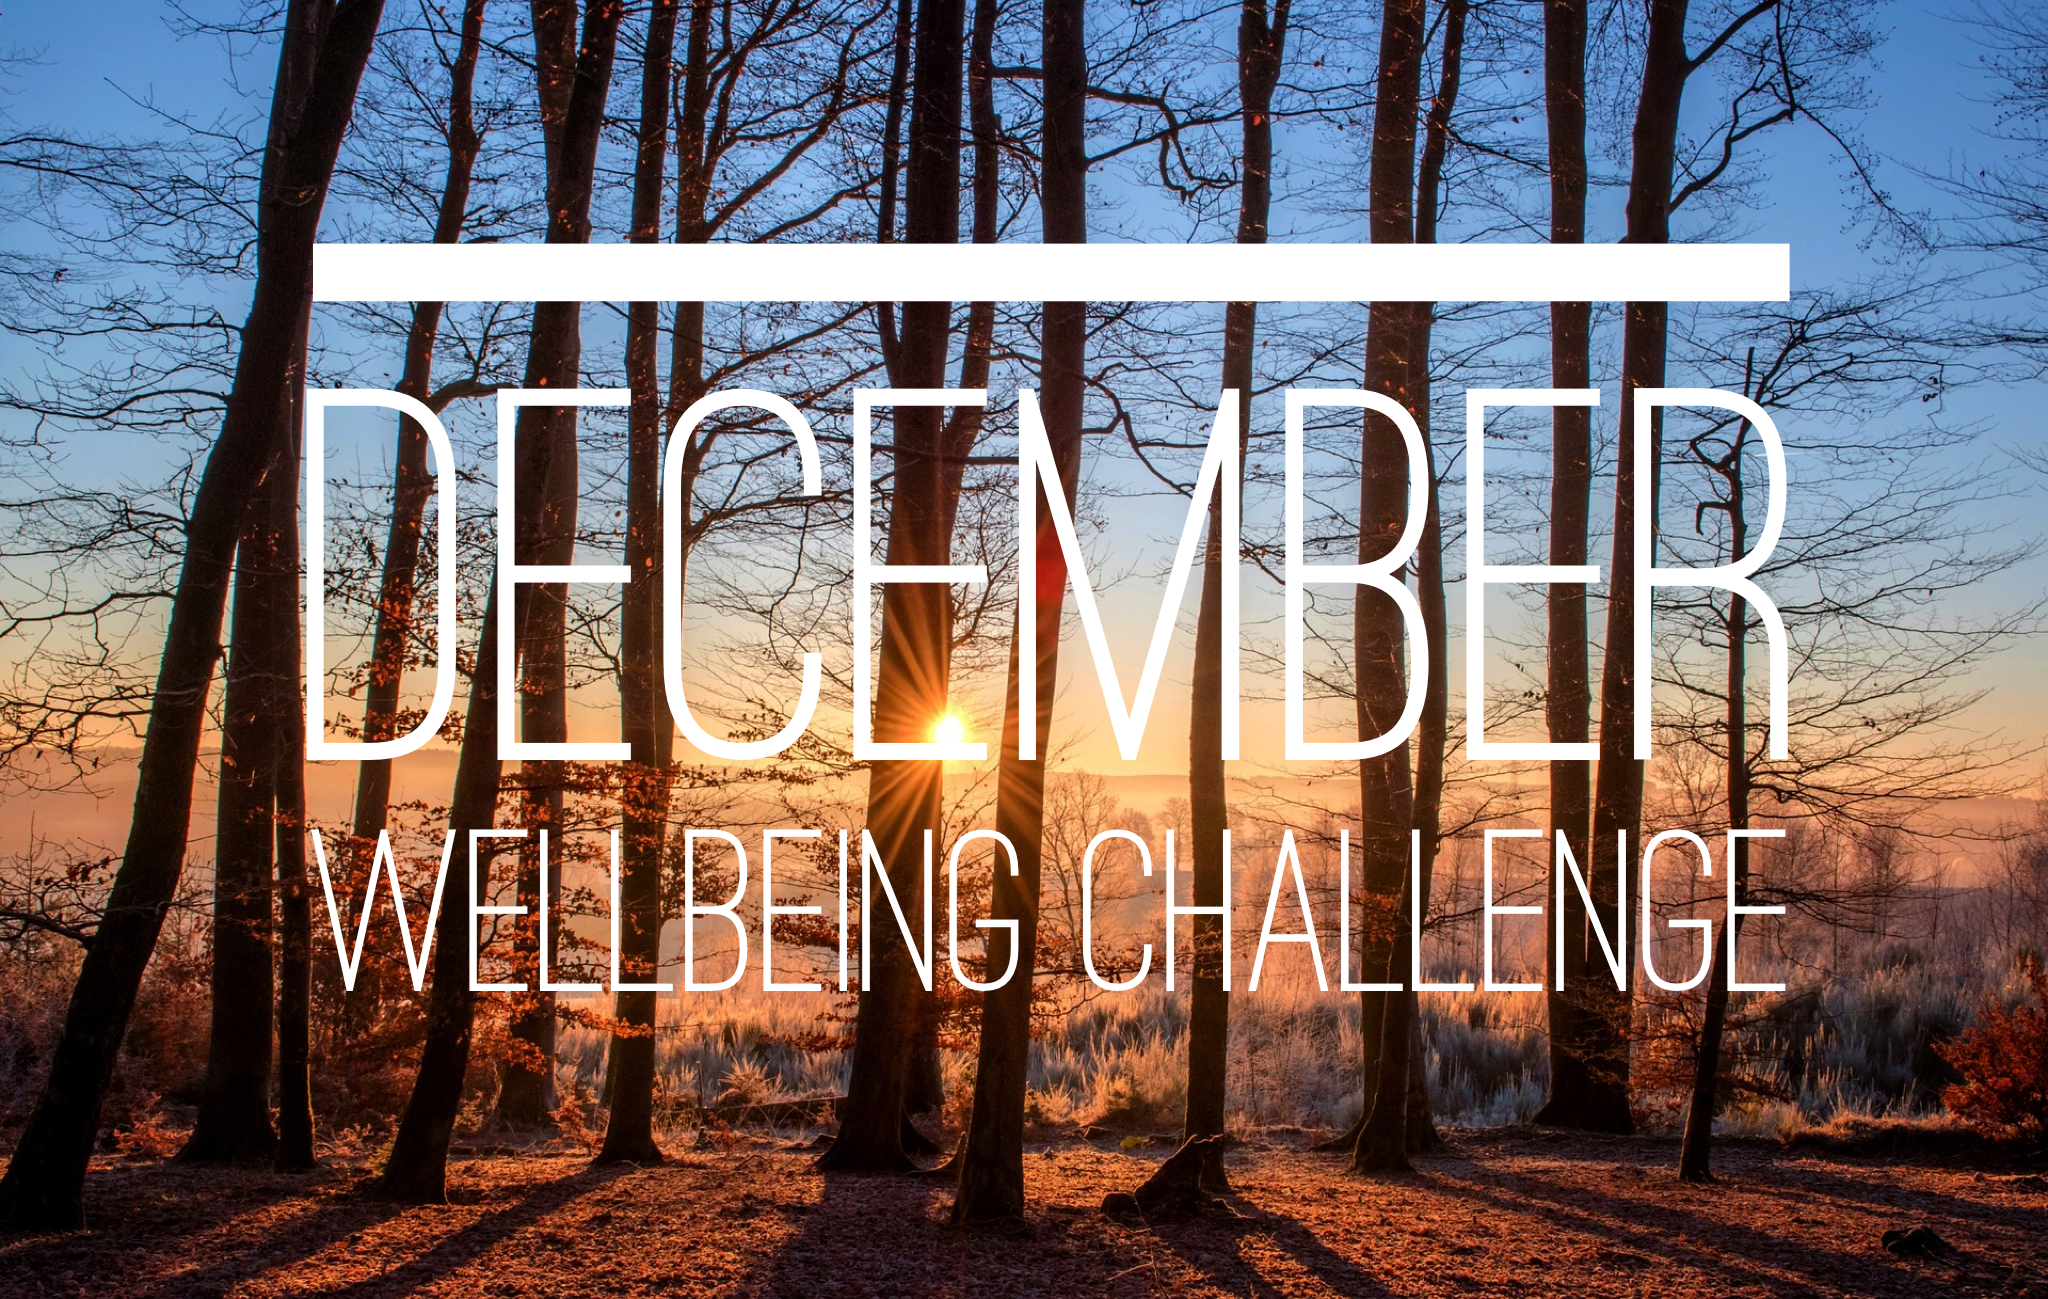 December Wellbeing Challenge